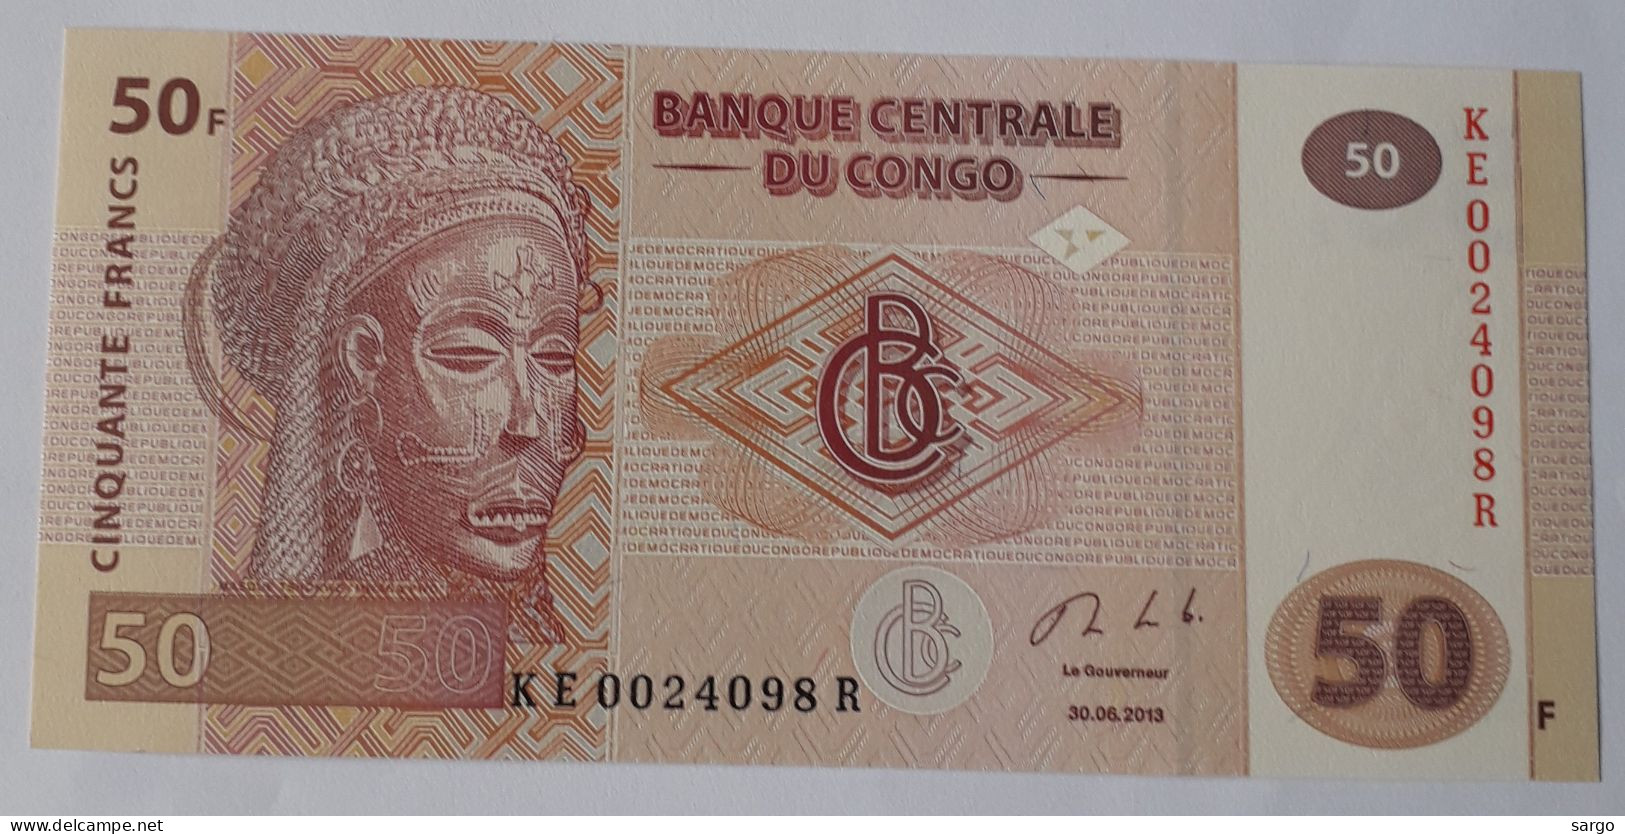 CONGO DEMOCRATIC REPUBLIC - 50 FRANCS  - P 97a  (2013) - UNC - BANKNOTES - PAPER MONEY - CARTAMONETA - - Democratic Republic Of The Congo & Zaire